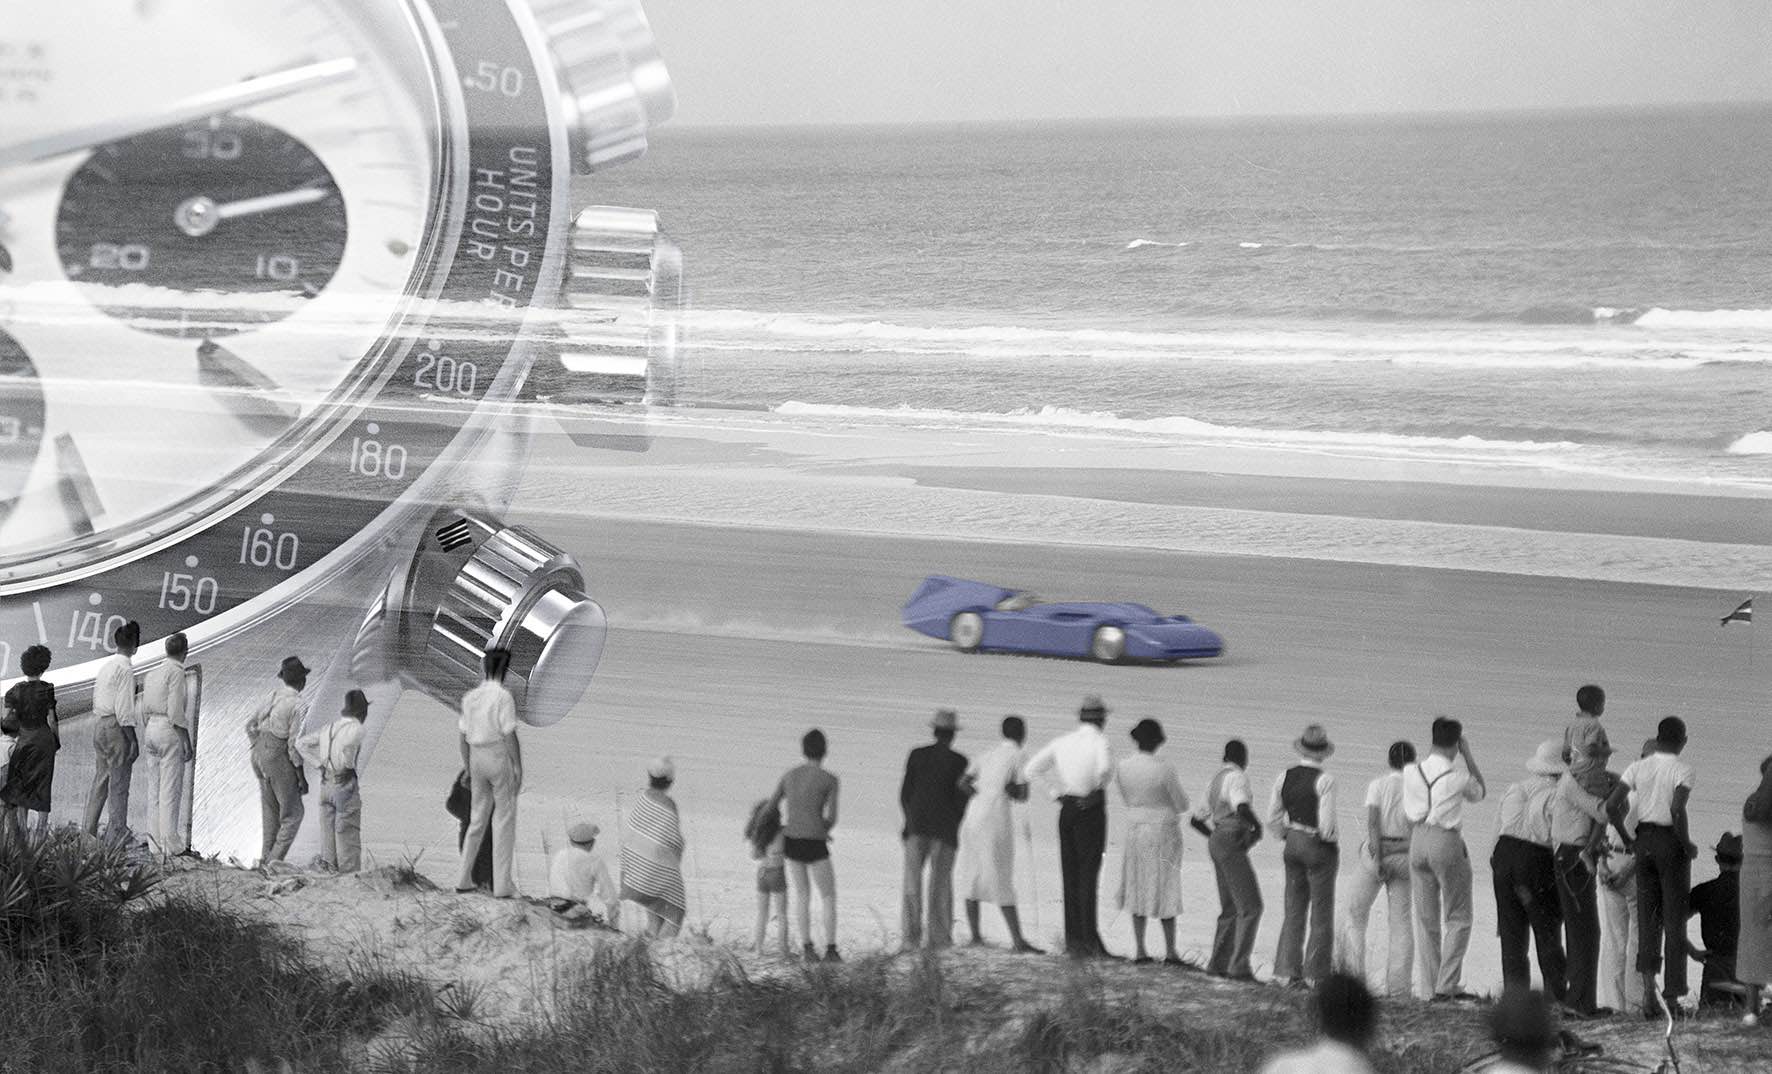 Rolex Daytona: The Legacy of a Beach Boy